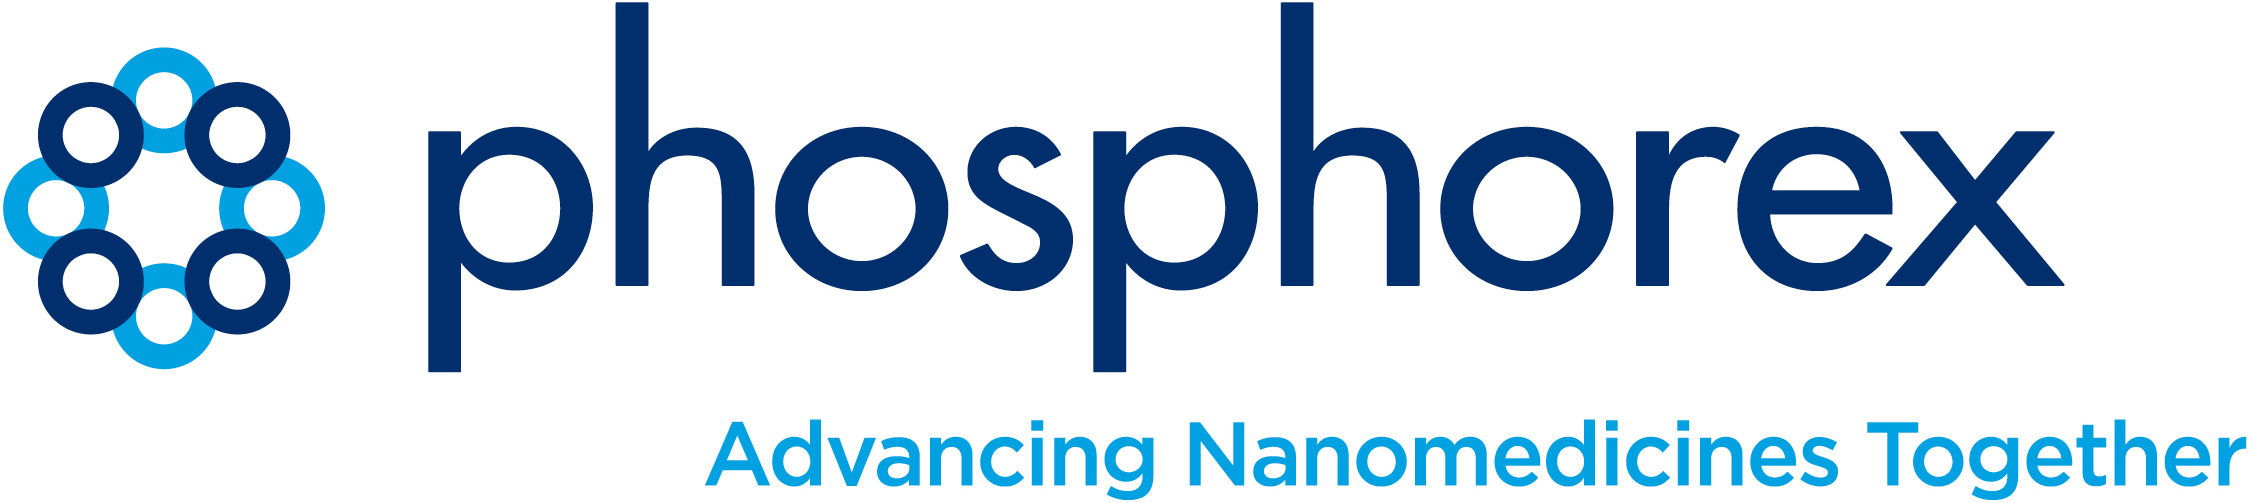 Phoshorex Logo